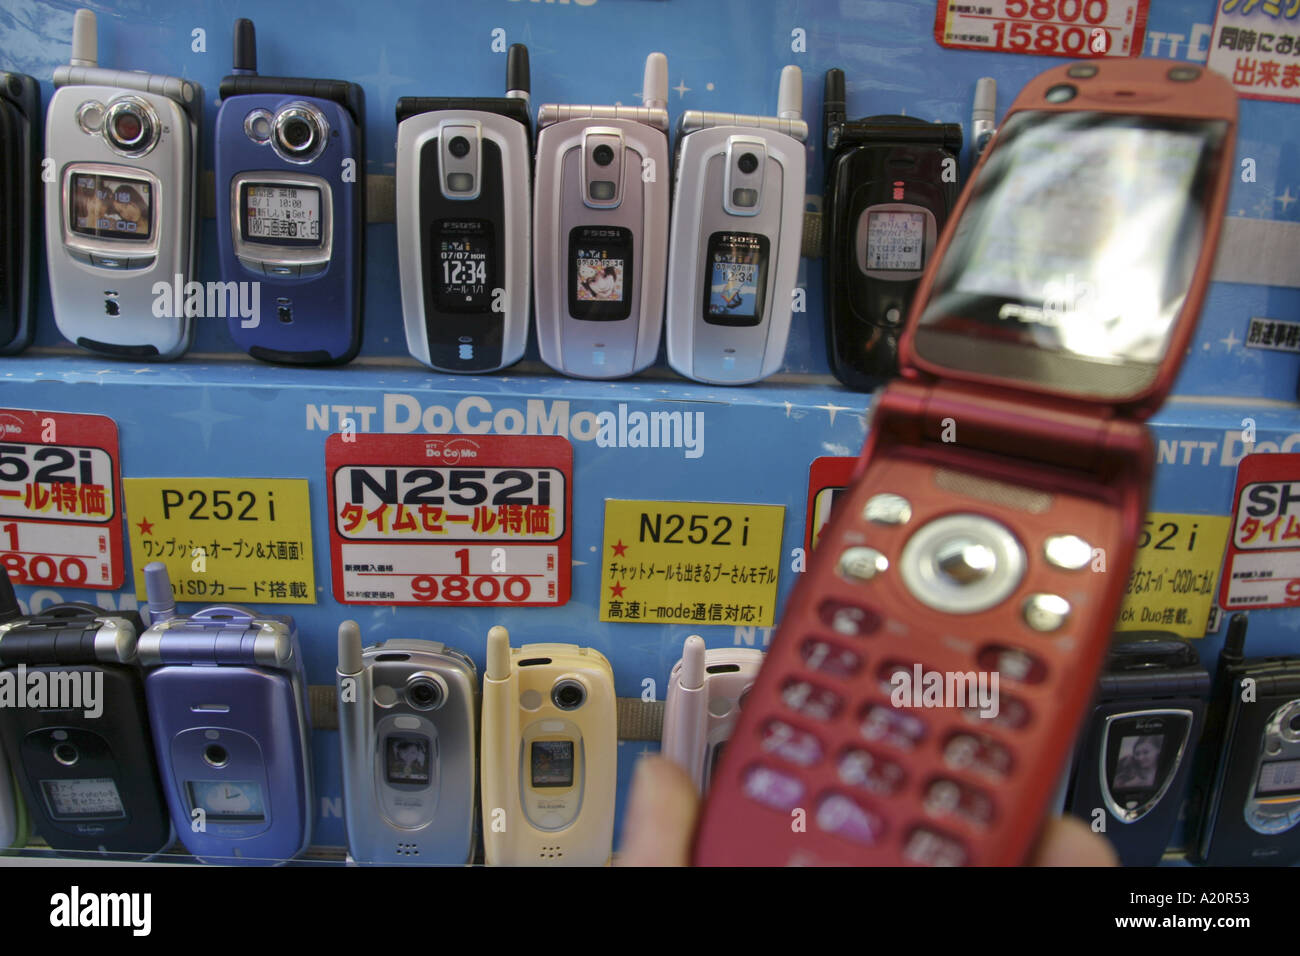 Mano che tiene in rosso di un telefono mobile in background righe di telefoni mobili da un NTT DoCoMo stand in un negozio di elettronica. Foto Stock